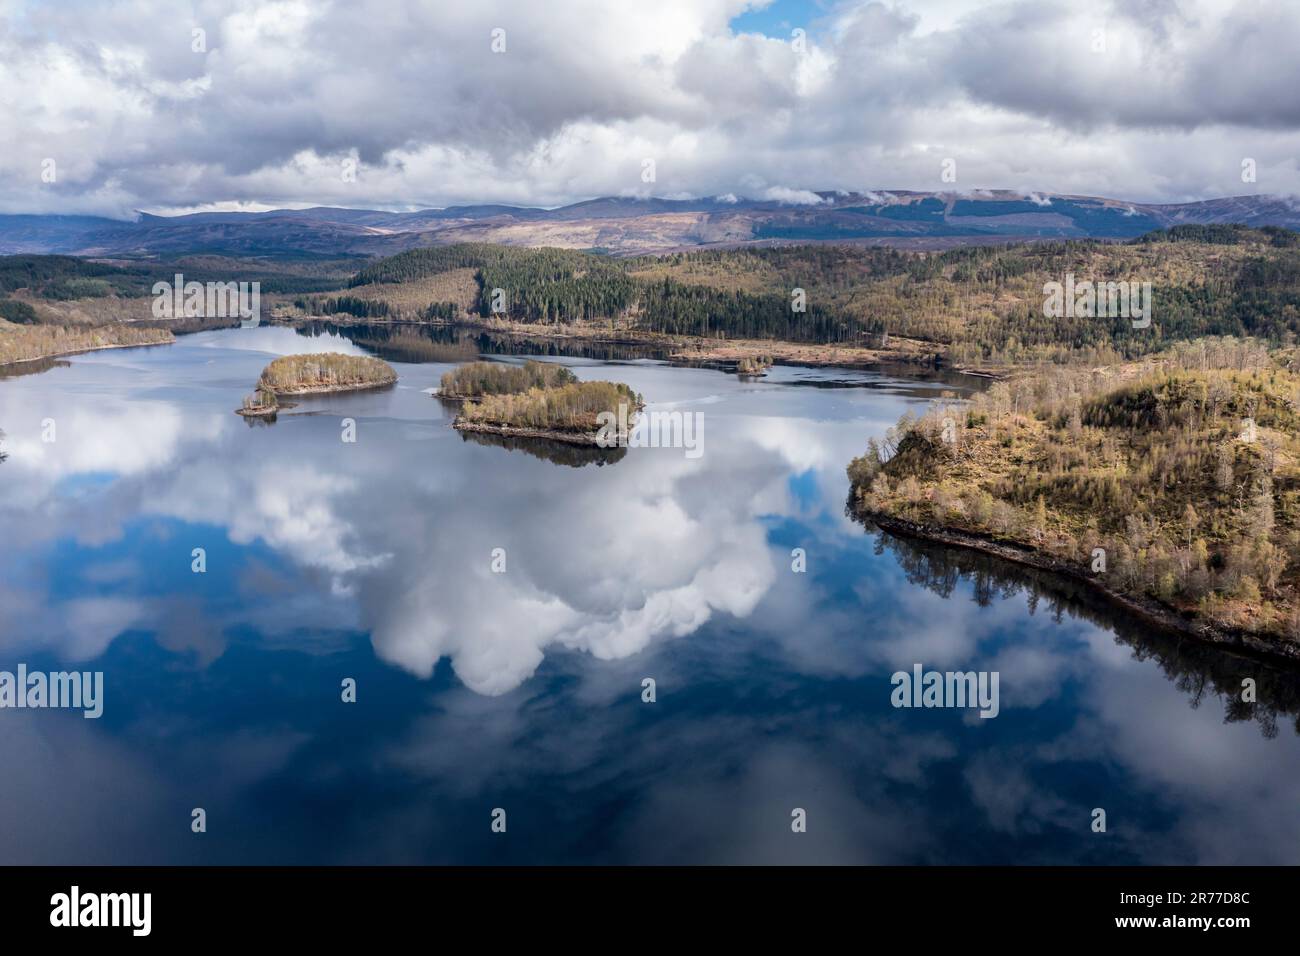 Nuages reflétés dans le lac Loch Garry, îles sur le ciel miroir, Highlands écossais, vue aérienne, Écosse, Royaume-Uni Banque D'Images